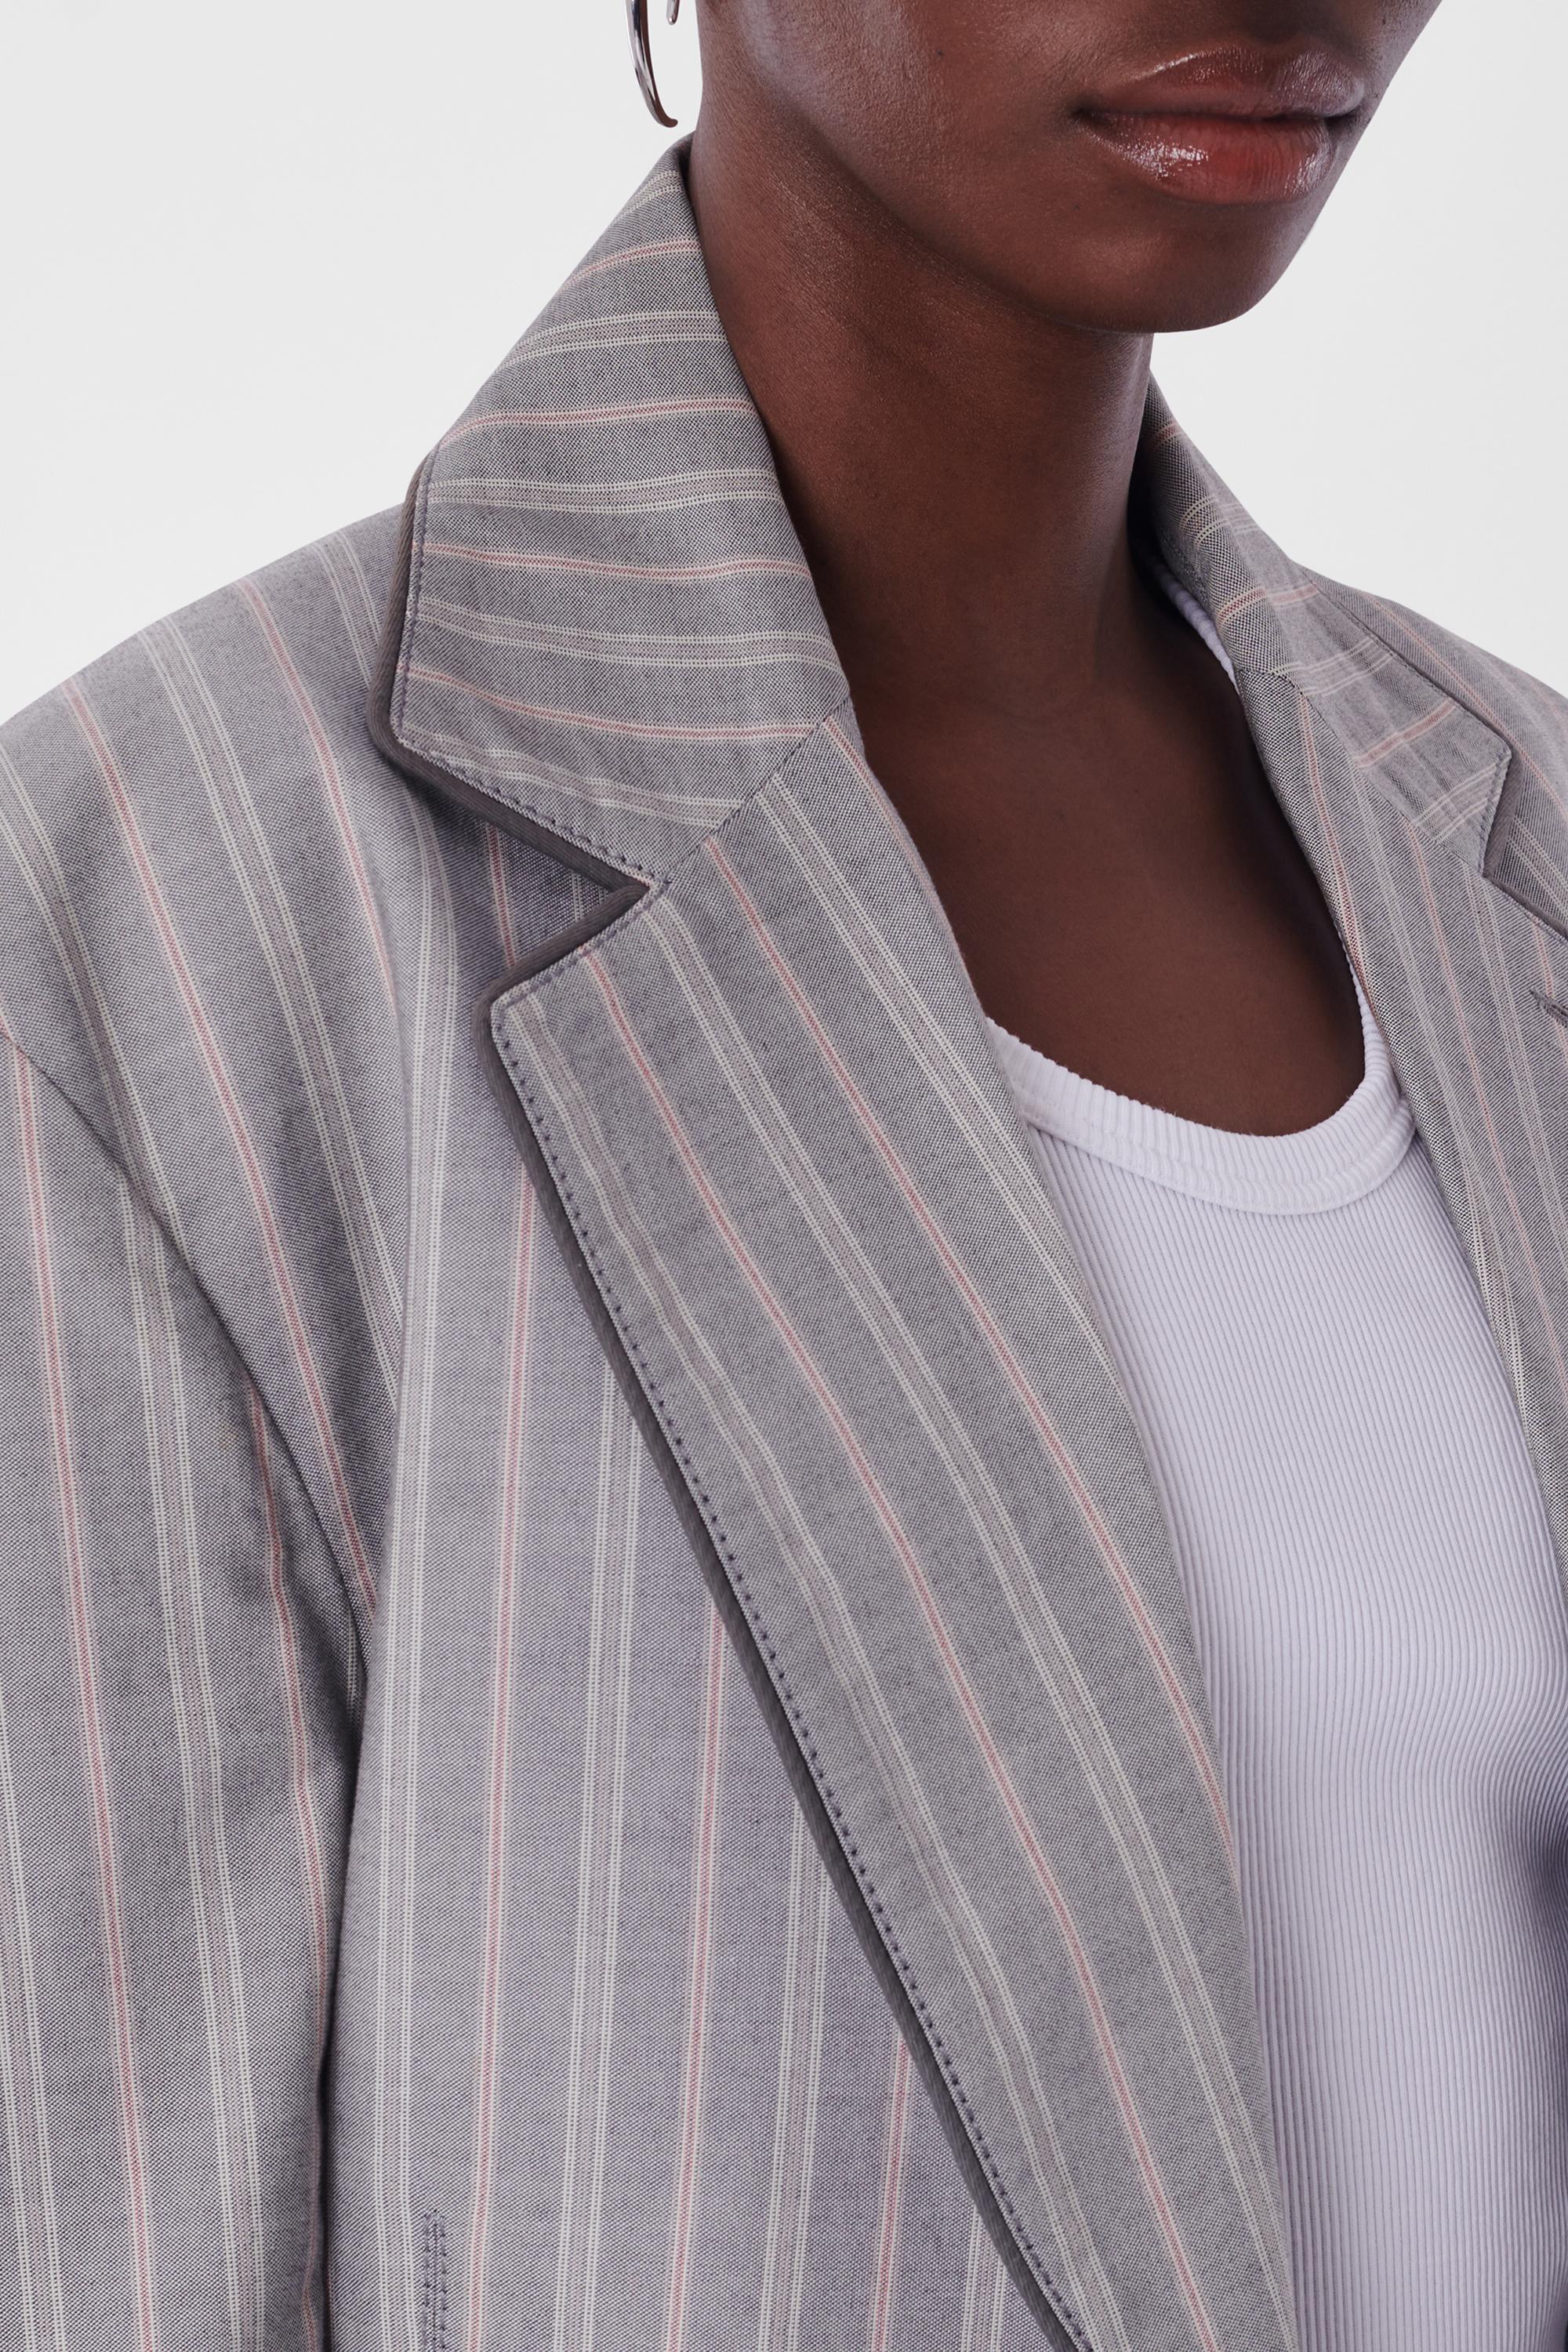 Vivienne Westwood Vintage S/S 1991 Nadelstreifen Anzug grau. Eigenschaften einzelne Brust, graue Paspel entlang Revers, 4 Taschen auf der Vorderseite, schlanke Passform mit Reißverschluss entlang der Schritt auf der Hose mit Knopf zum Schließen. in